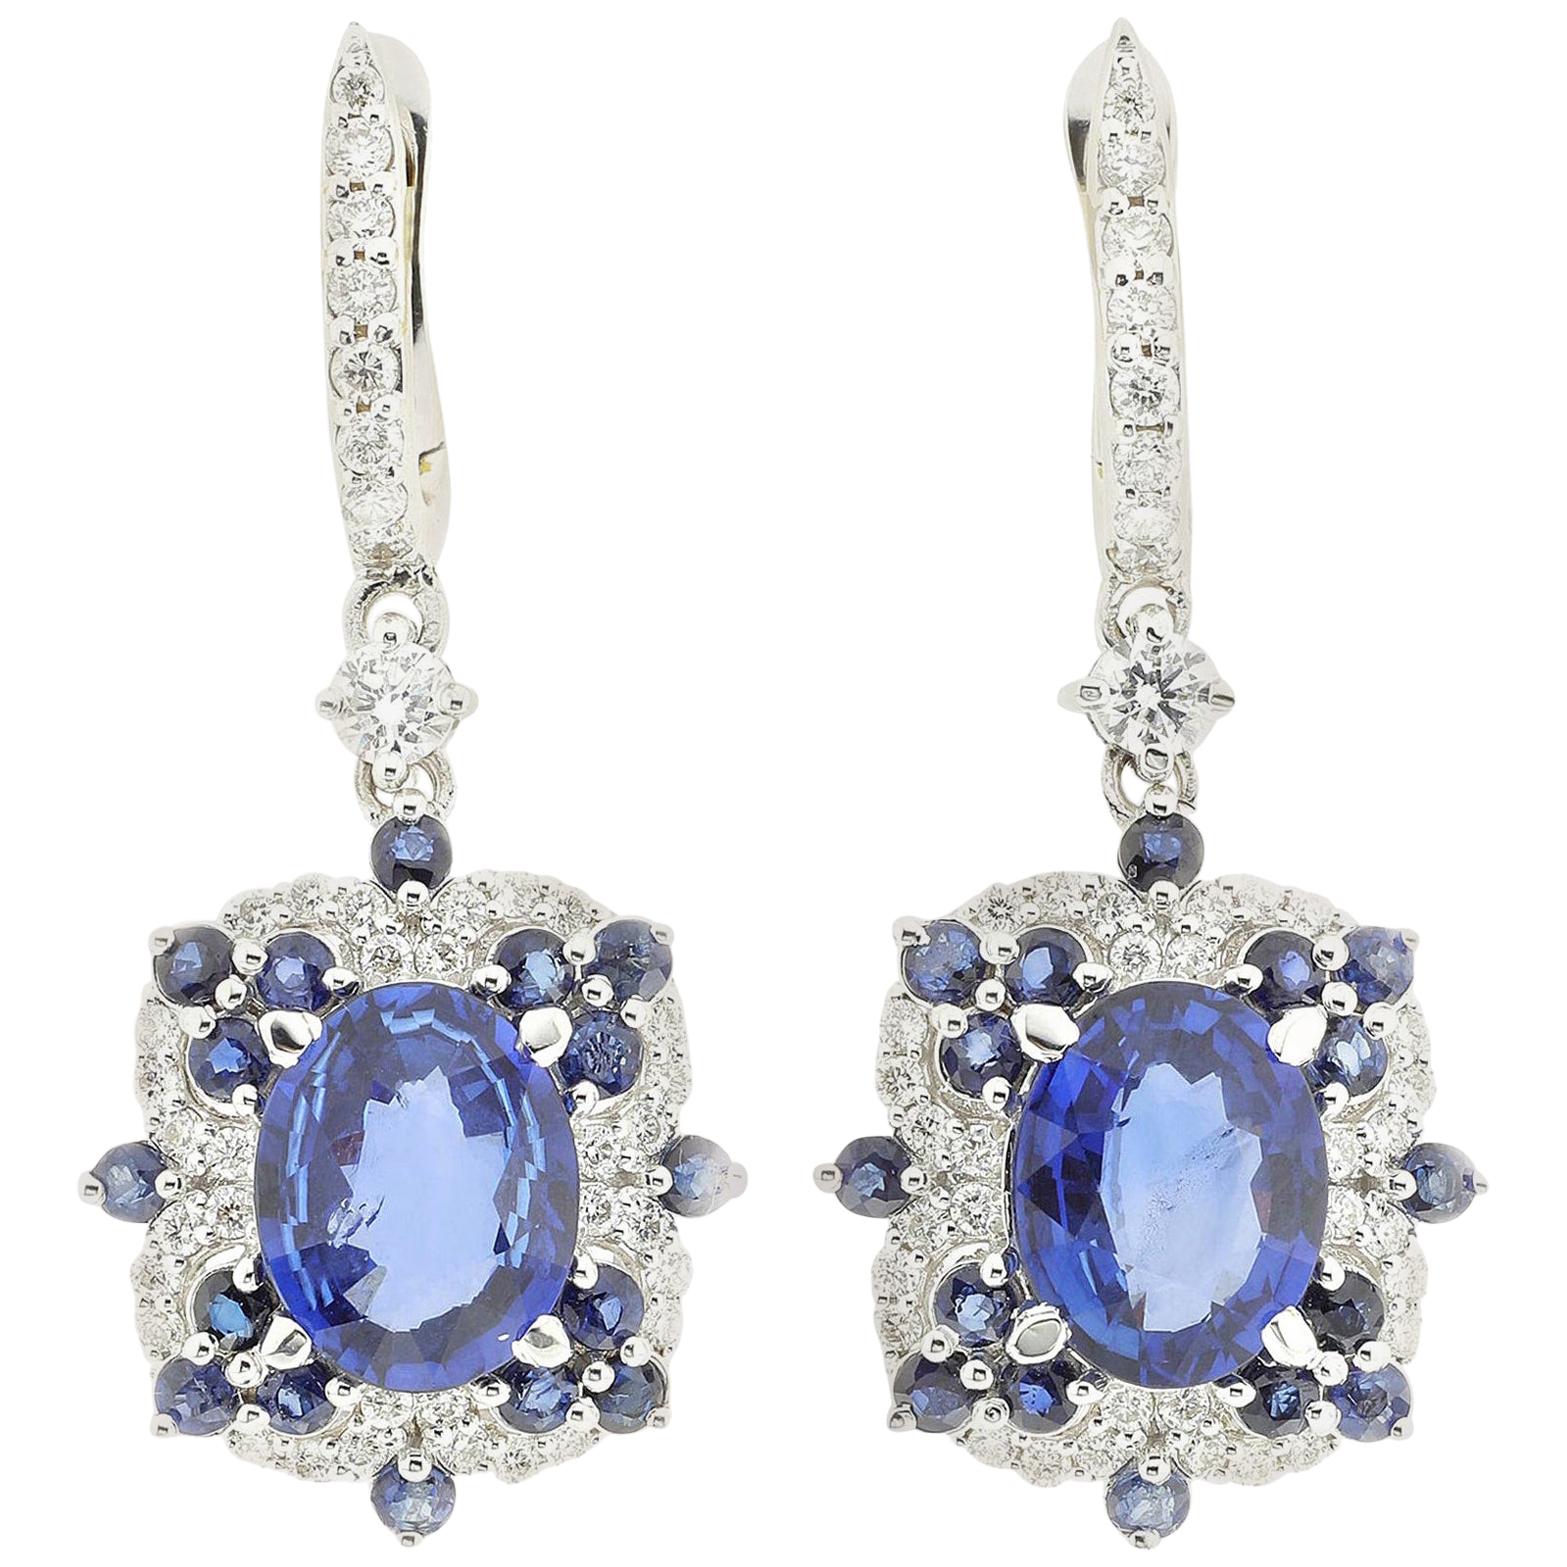 Boucles d'oreilles contemporaines en or blanc 18 carats avec diamants (G VS) et saphirs bleus